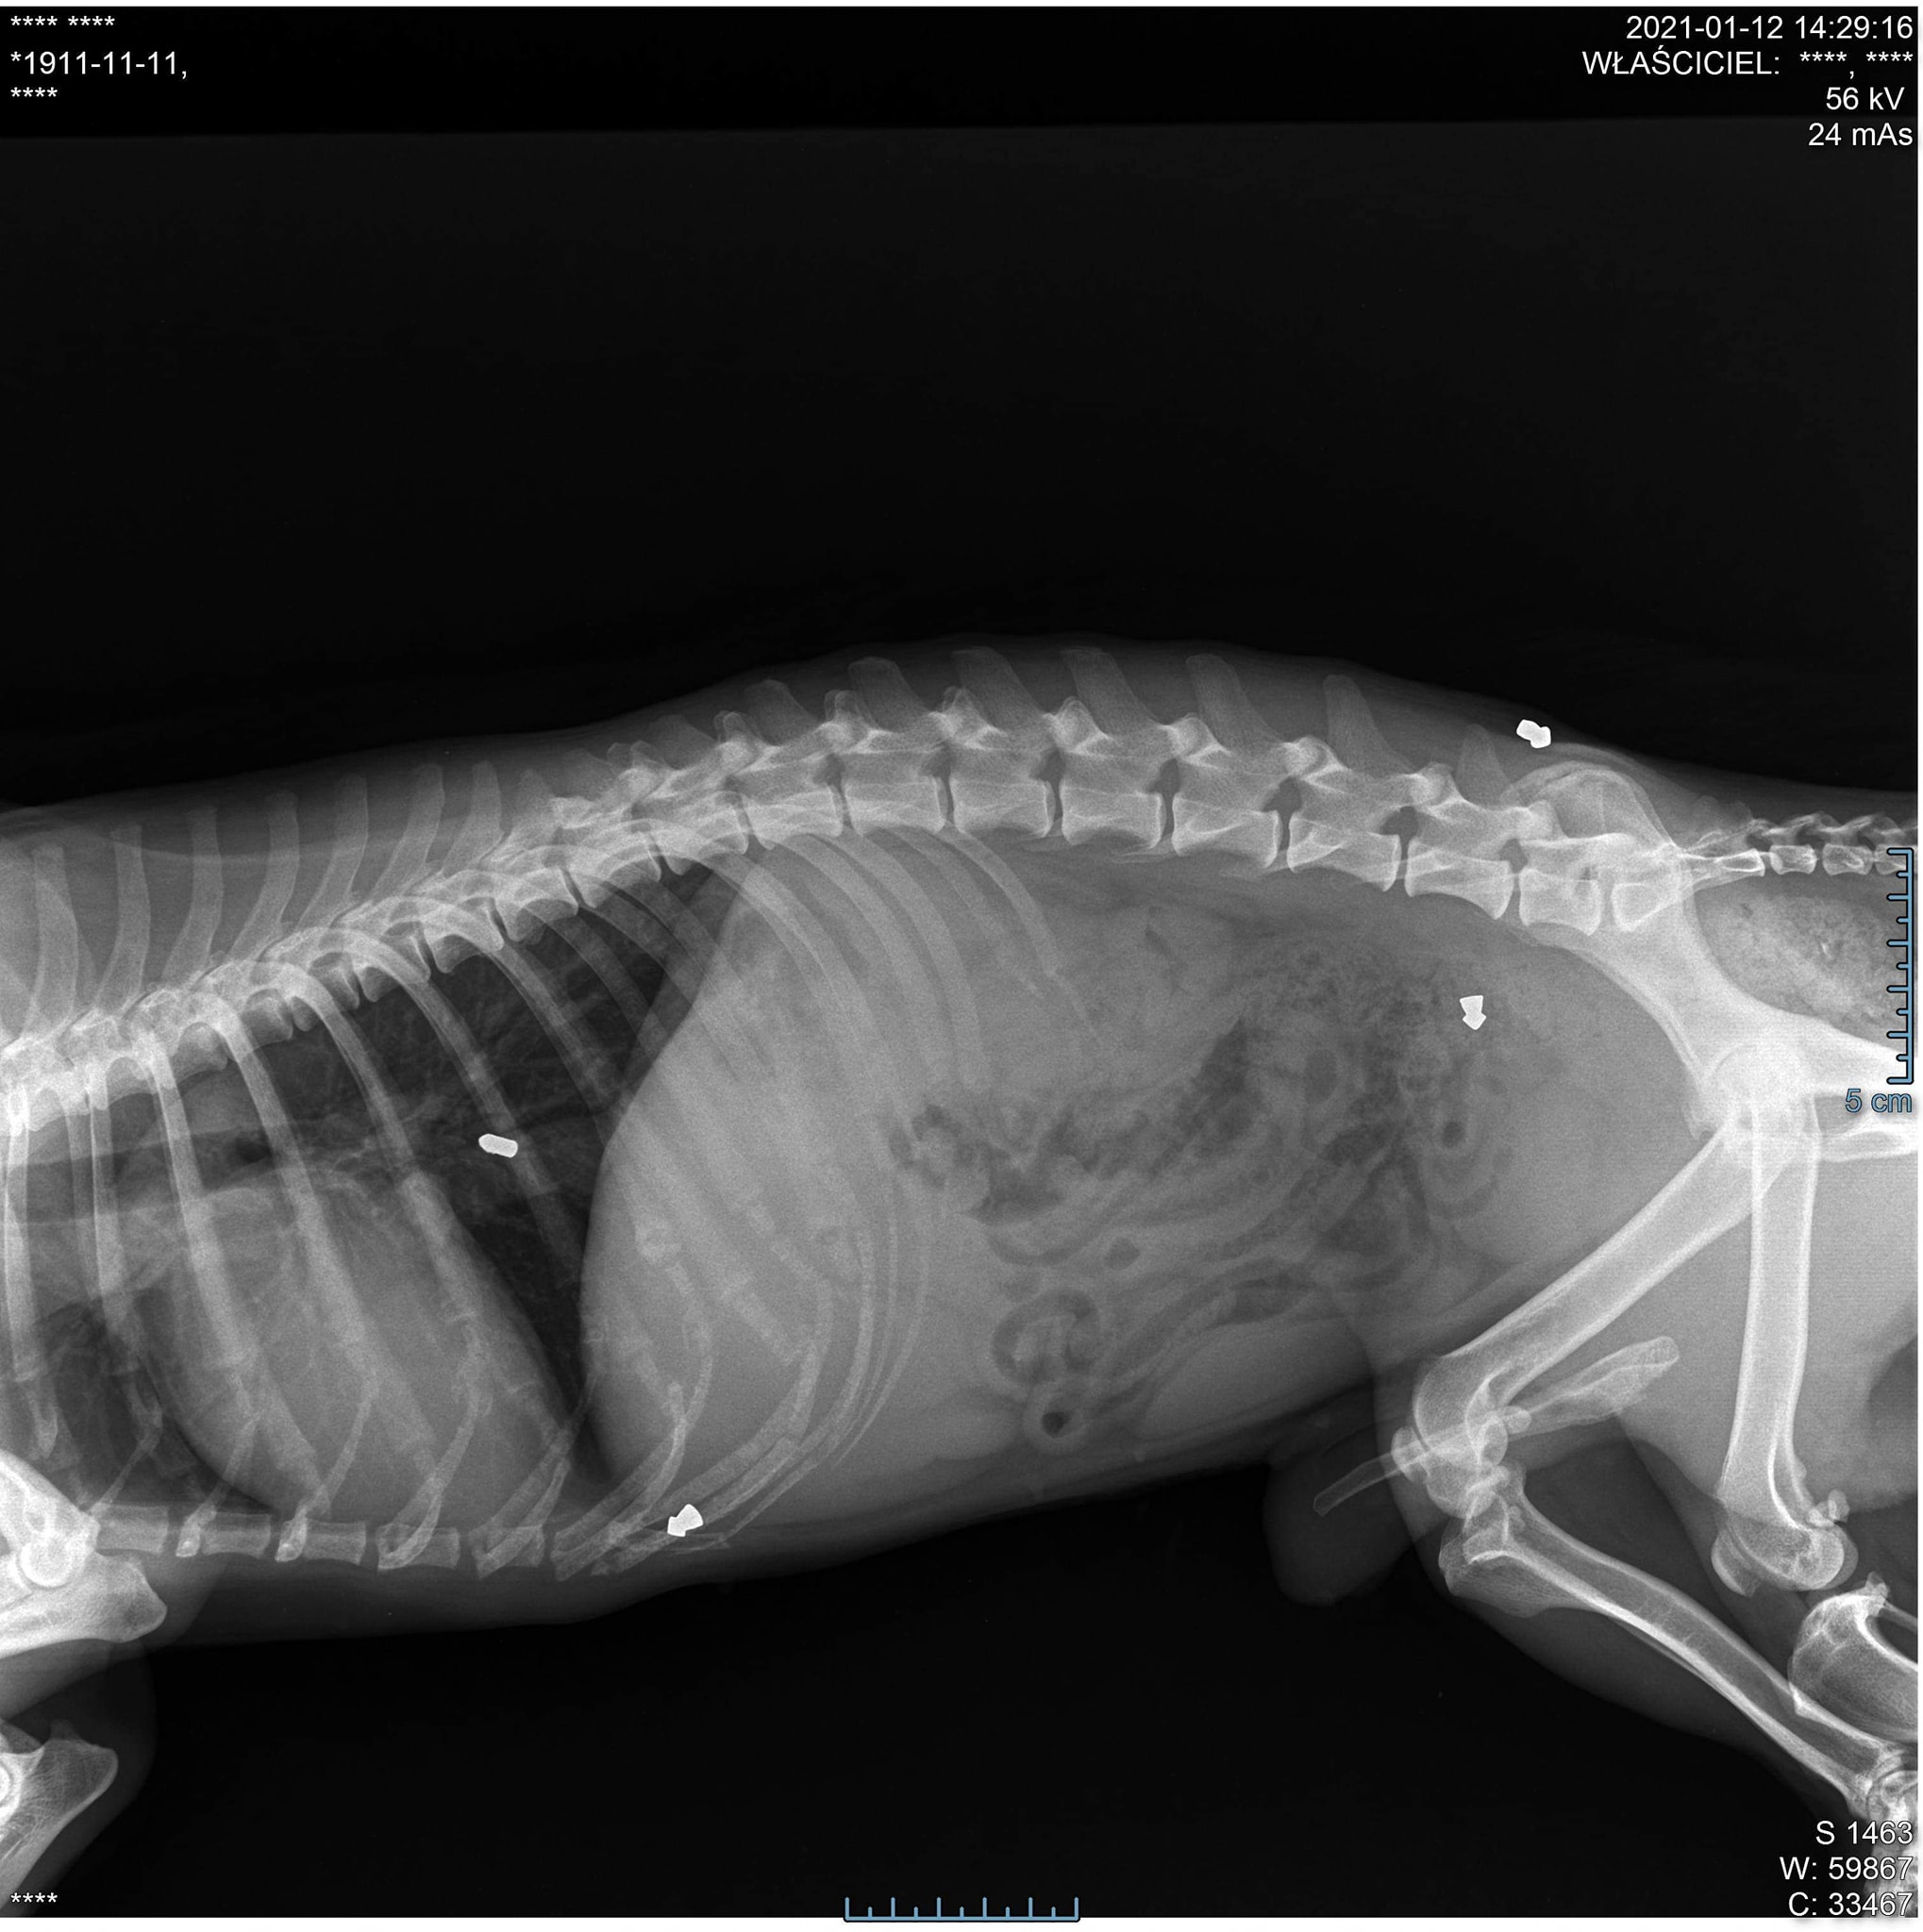 PSYjaciele Postrzelony pies w bardzo ciężkim stanie trafił do weterynarza, zdjęcie z prześwietlenia